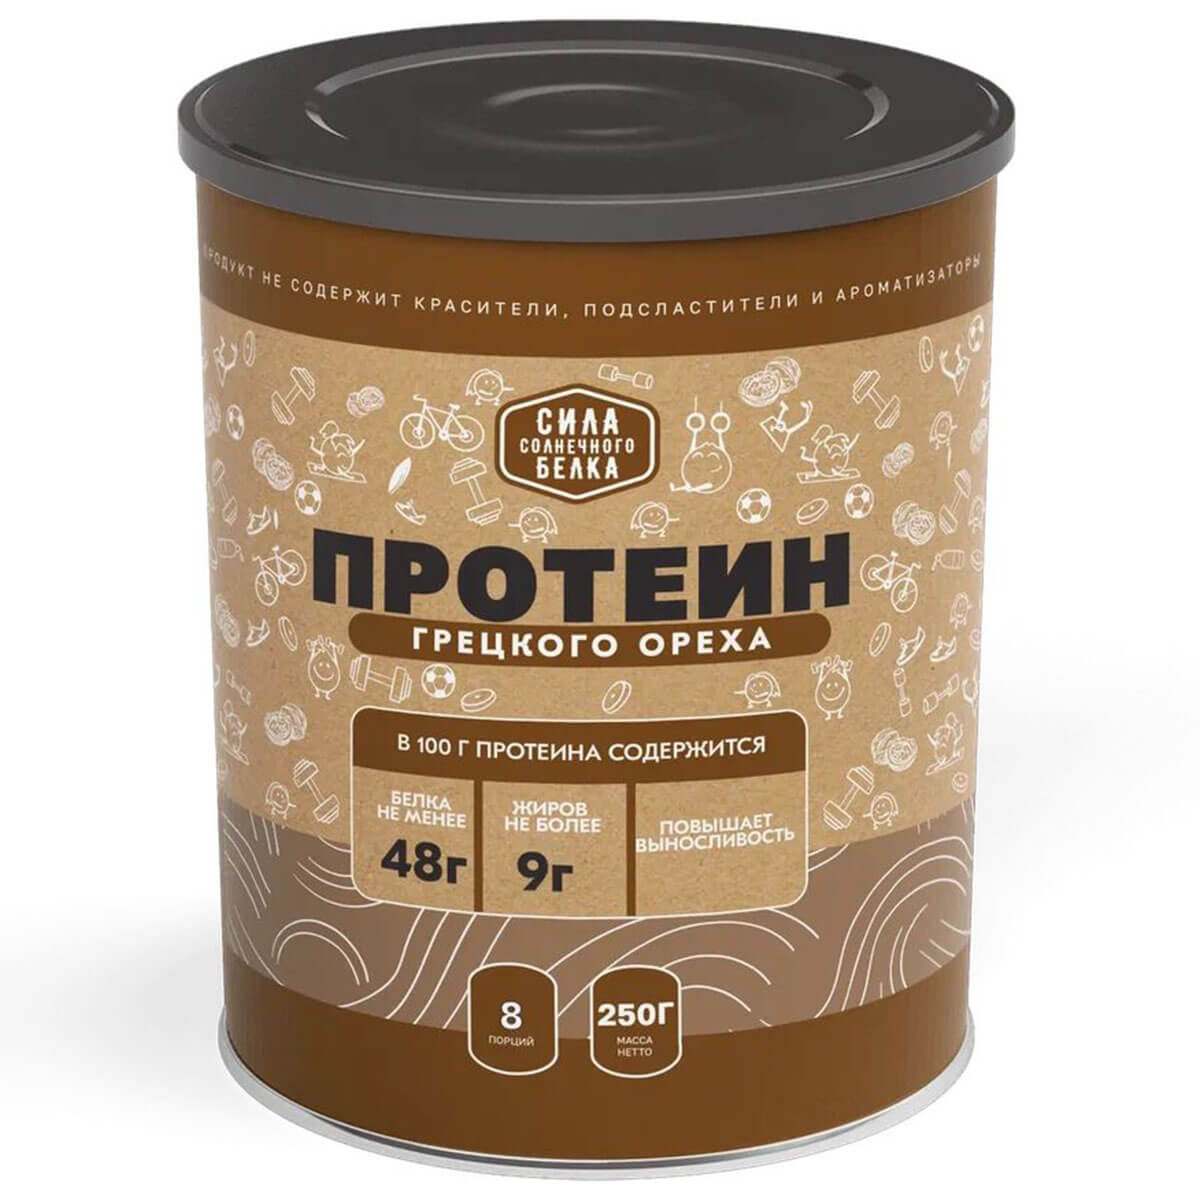 Протеин грецкого ореха , 250 гр, Оргтиум - фото 1